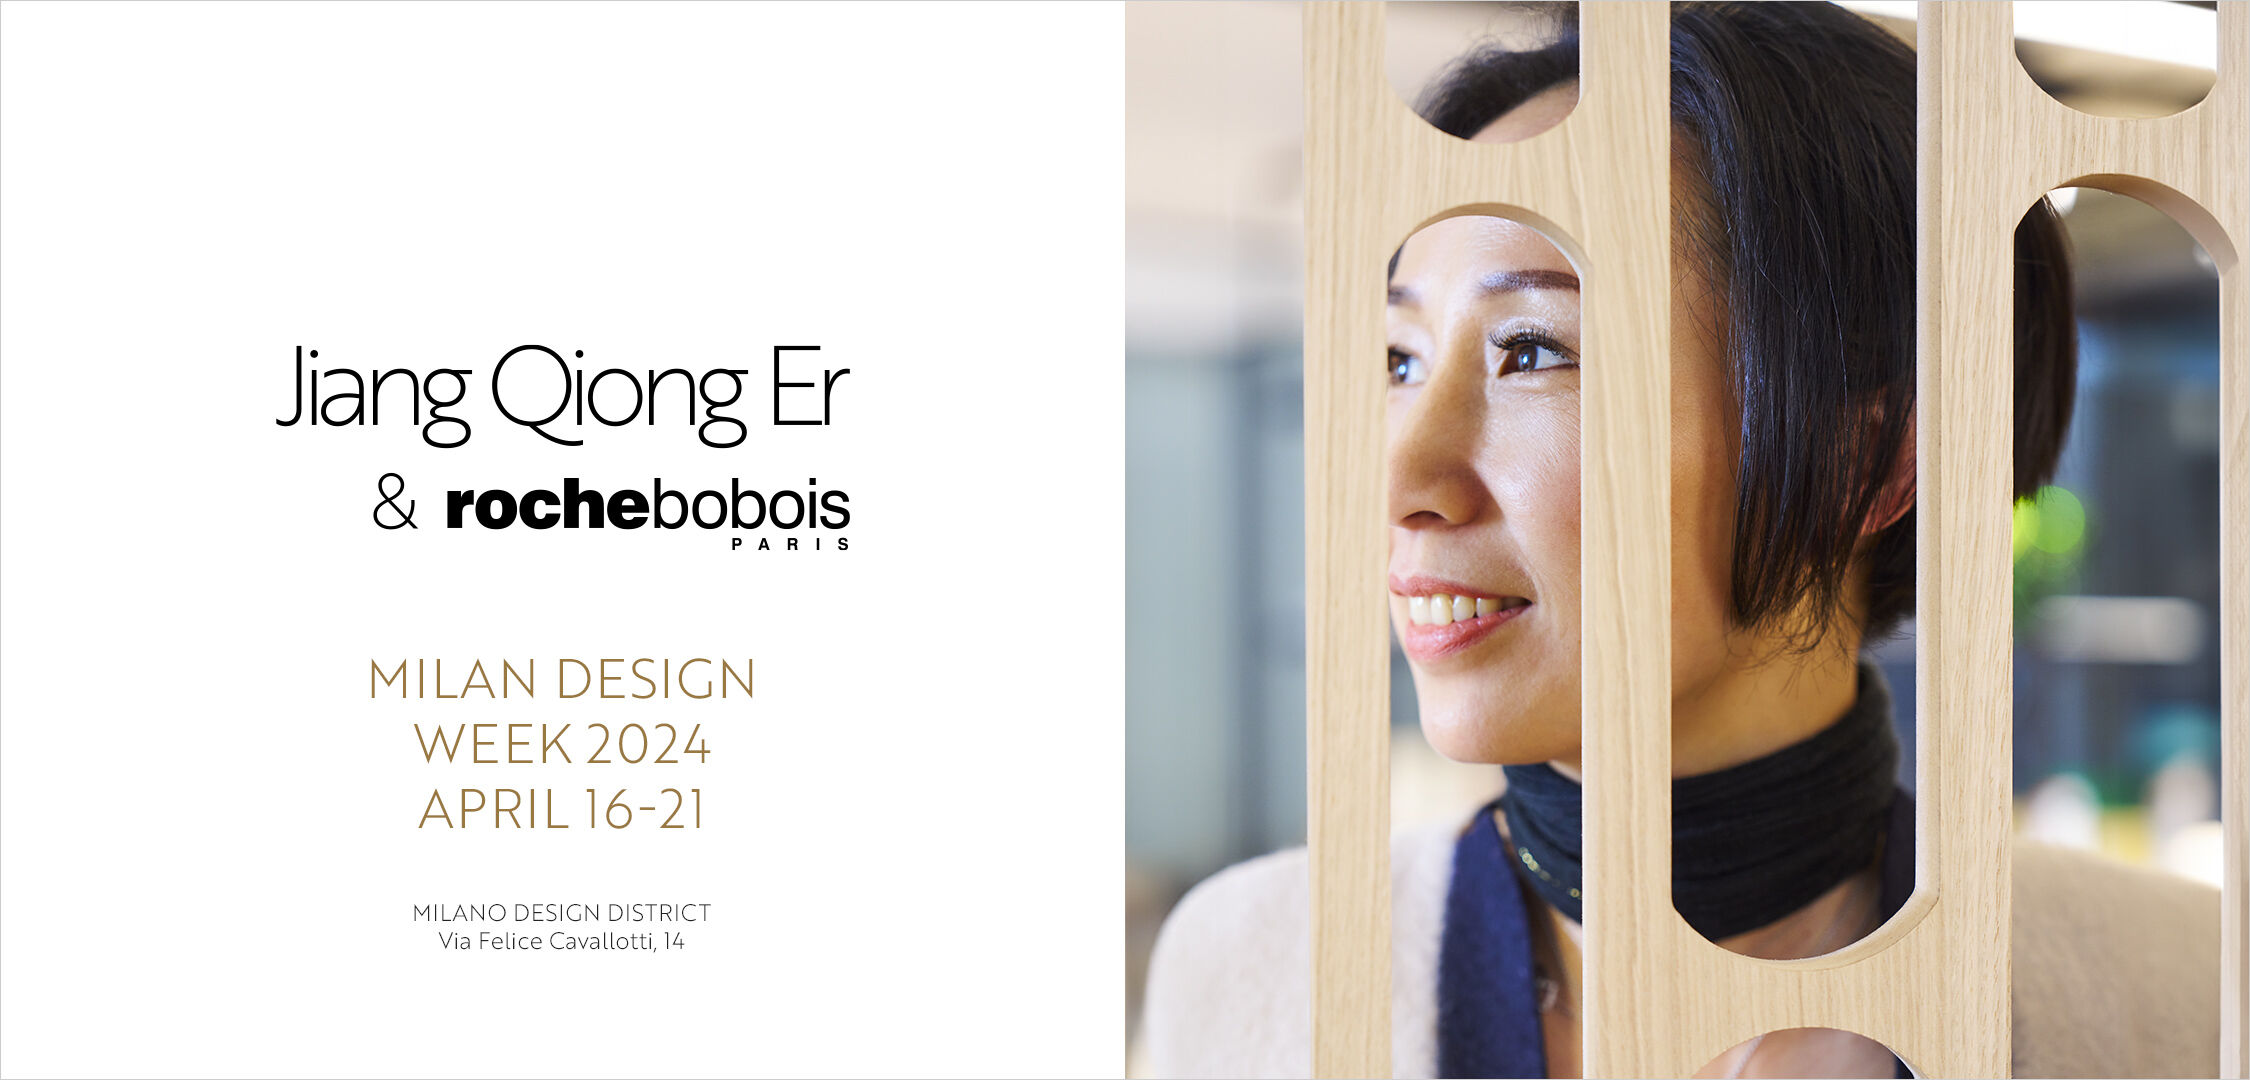 Milan Design Week 2024 - Jiang Qiong Er & Roche Bobois